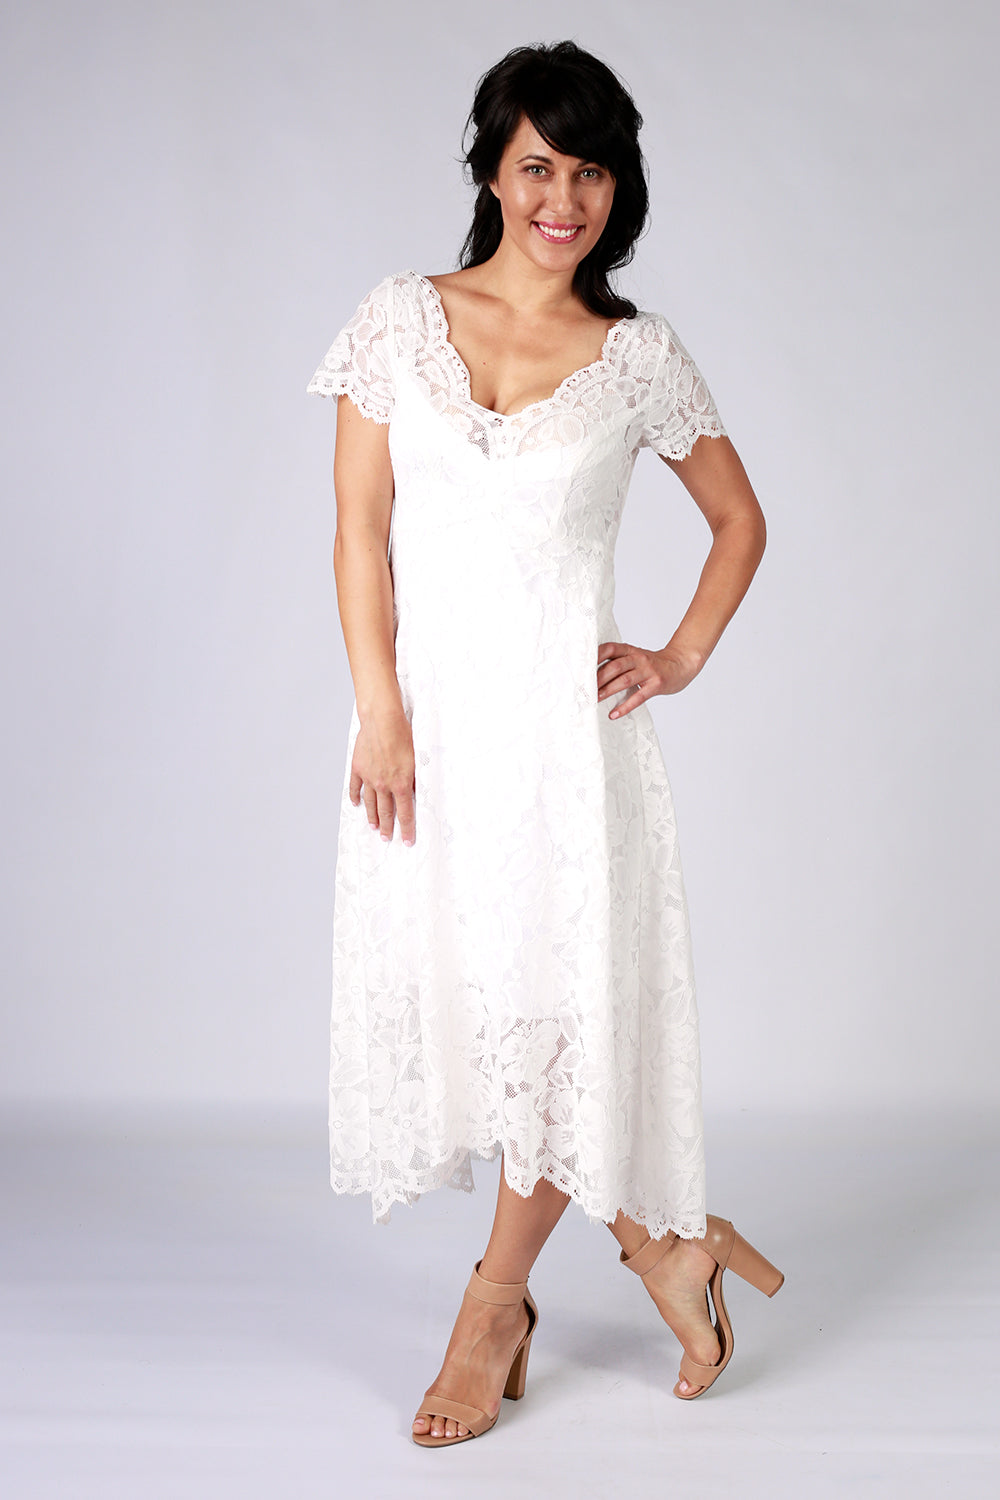 Moon Flower Dress | Lace Dress | New Zealand Fashion Designer | Annah Stretton | Wedding Dress | Wedding Dress NZ